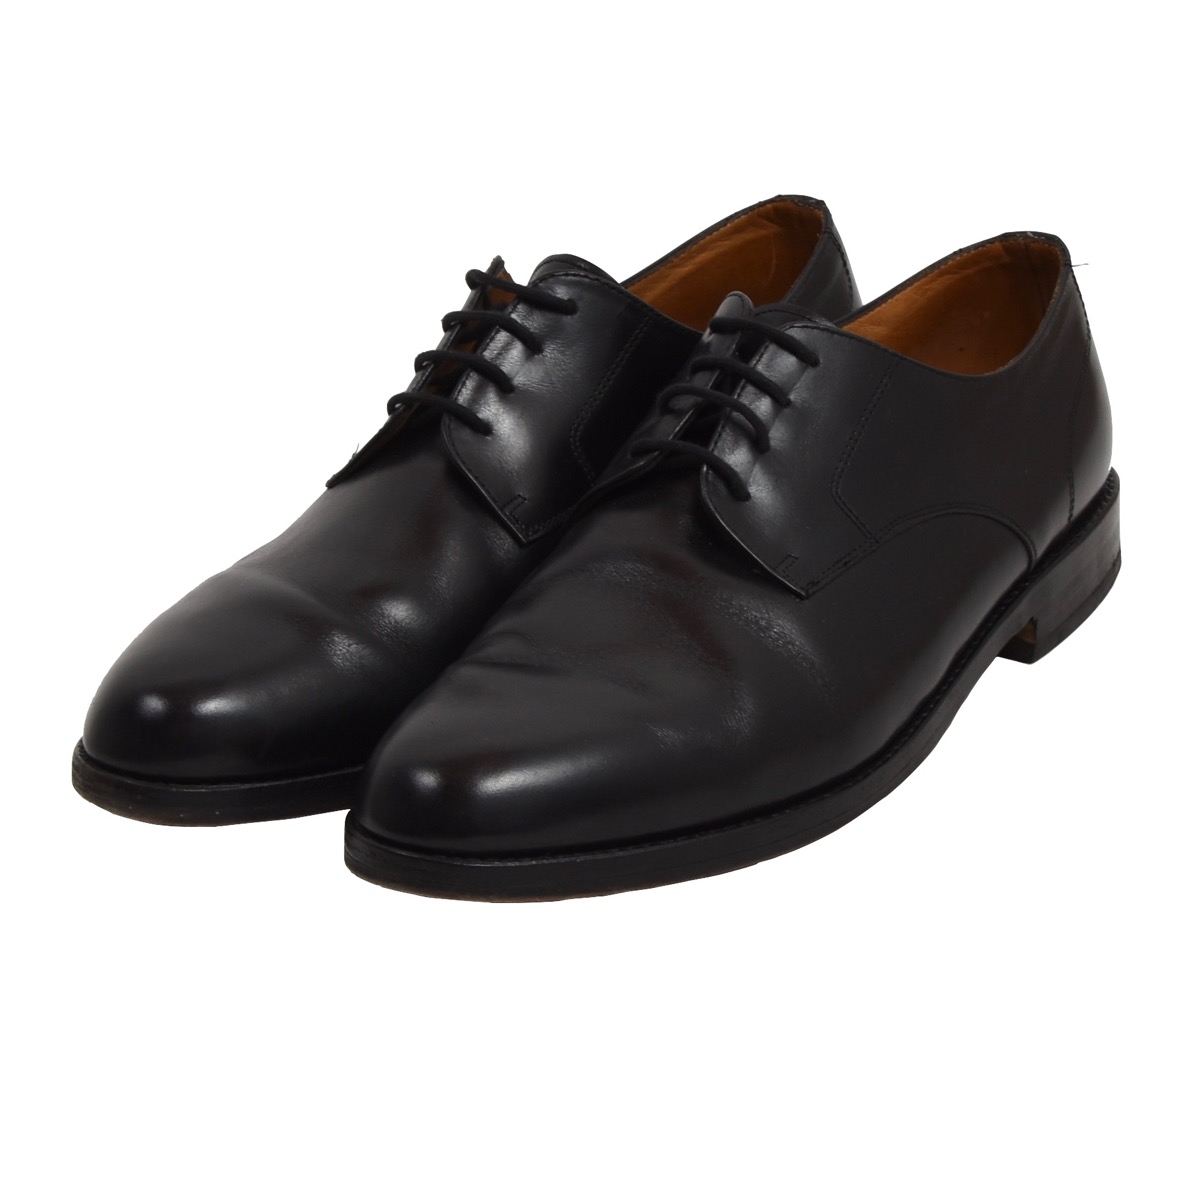 ELGG Switzerland Schuhe Shoes Gr 10,5 G Schwarz Black Leder Plain Toe ...